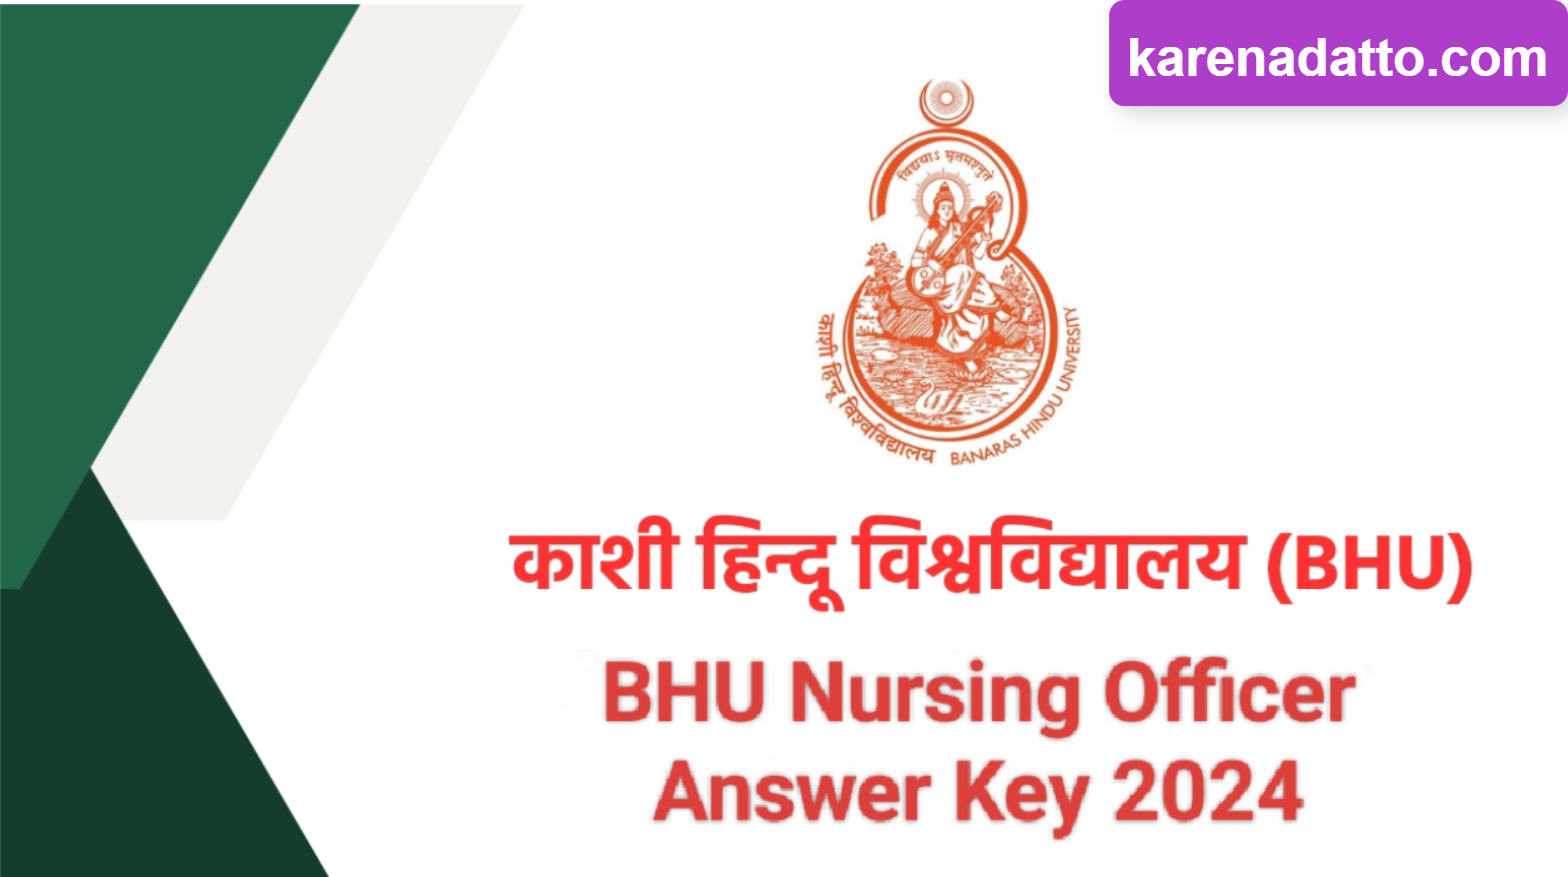 BHU Nursing Officer 2024 Result